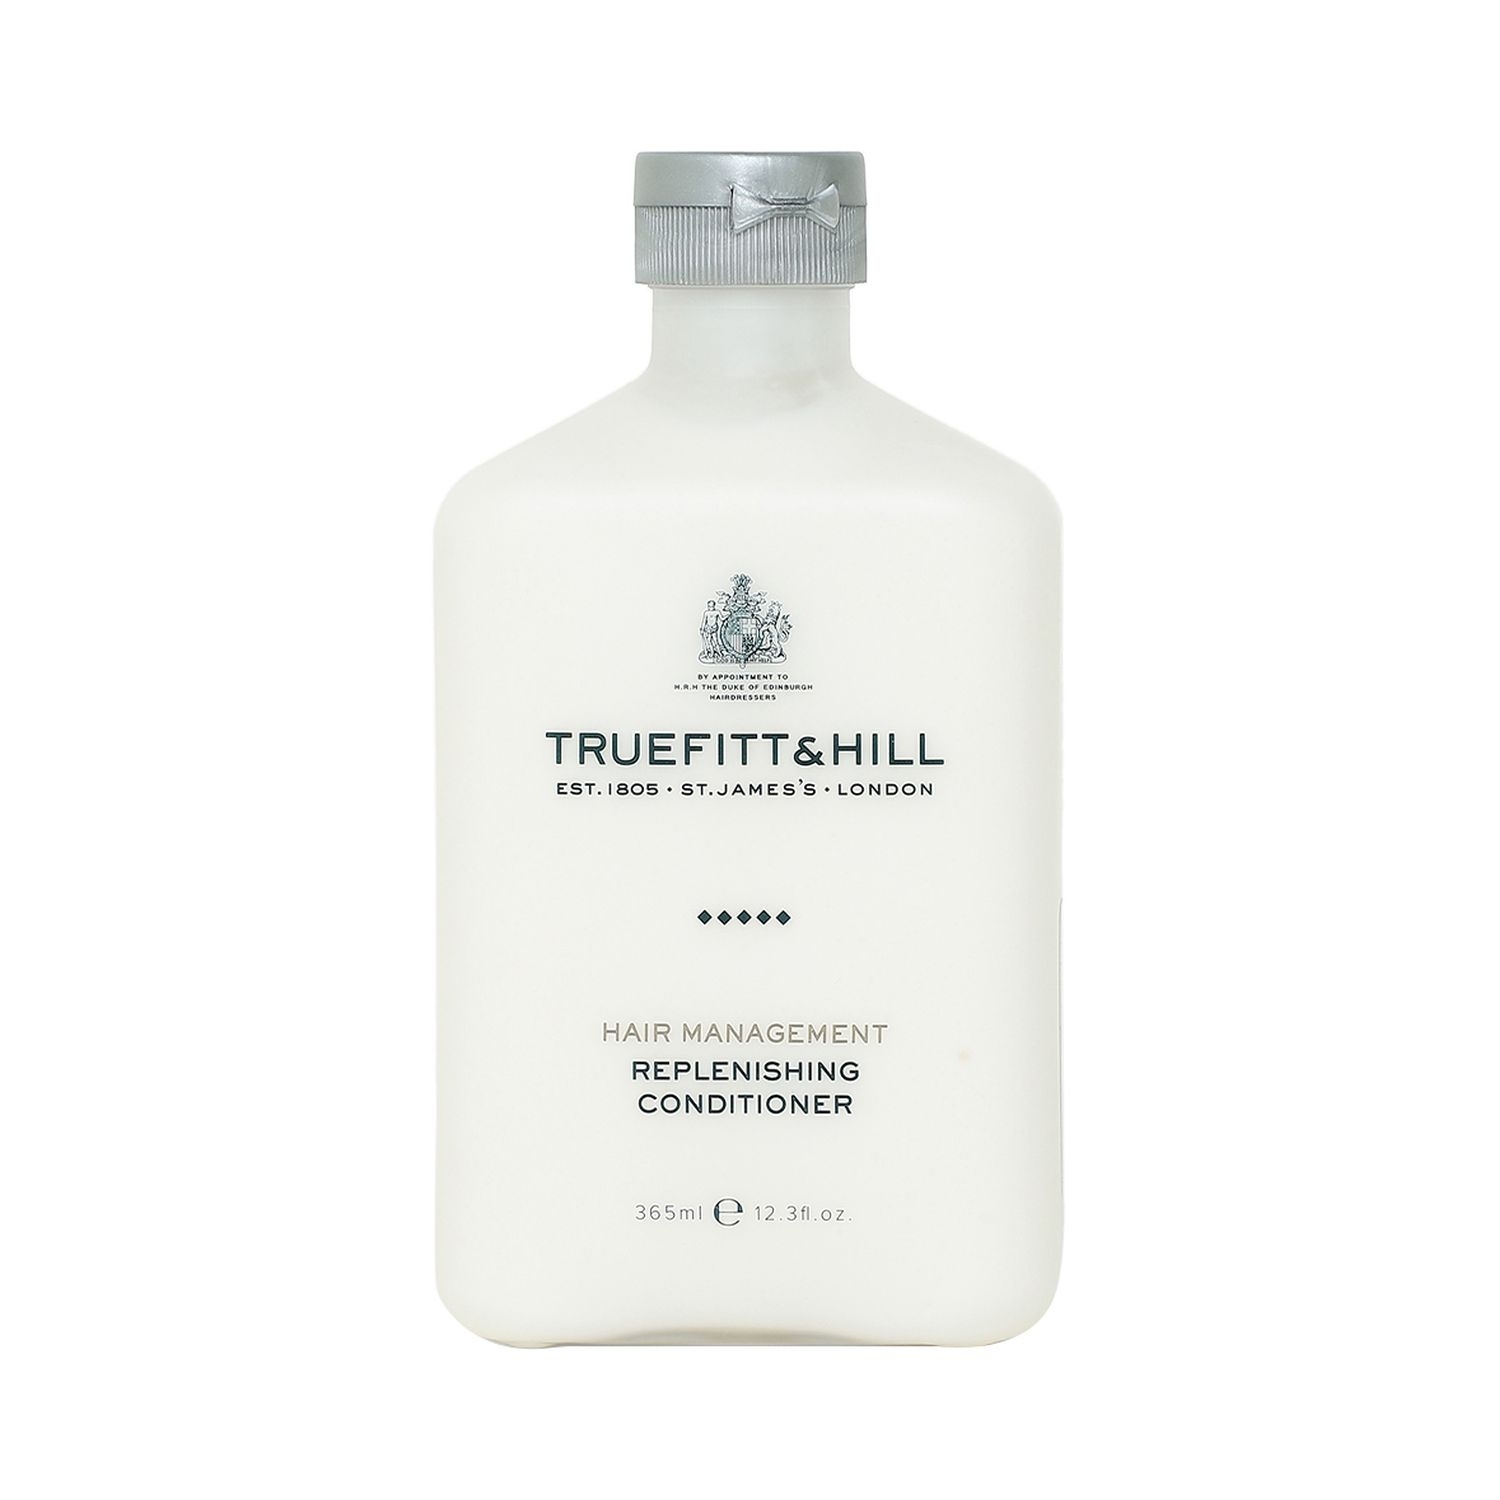 Truefitt & Hill | Truefitt & Hill Hair Management Replenishing Conditioner (365ml)